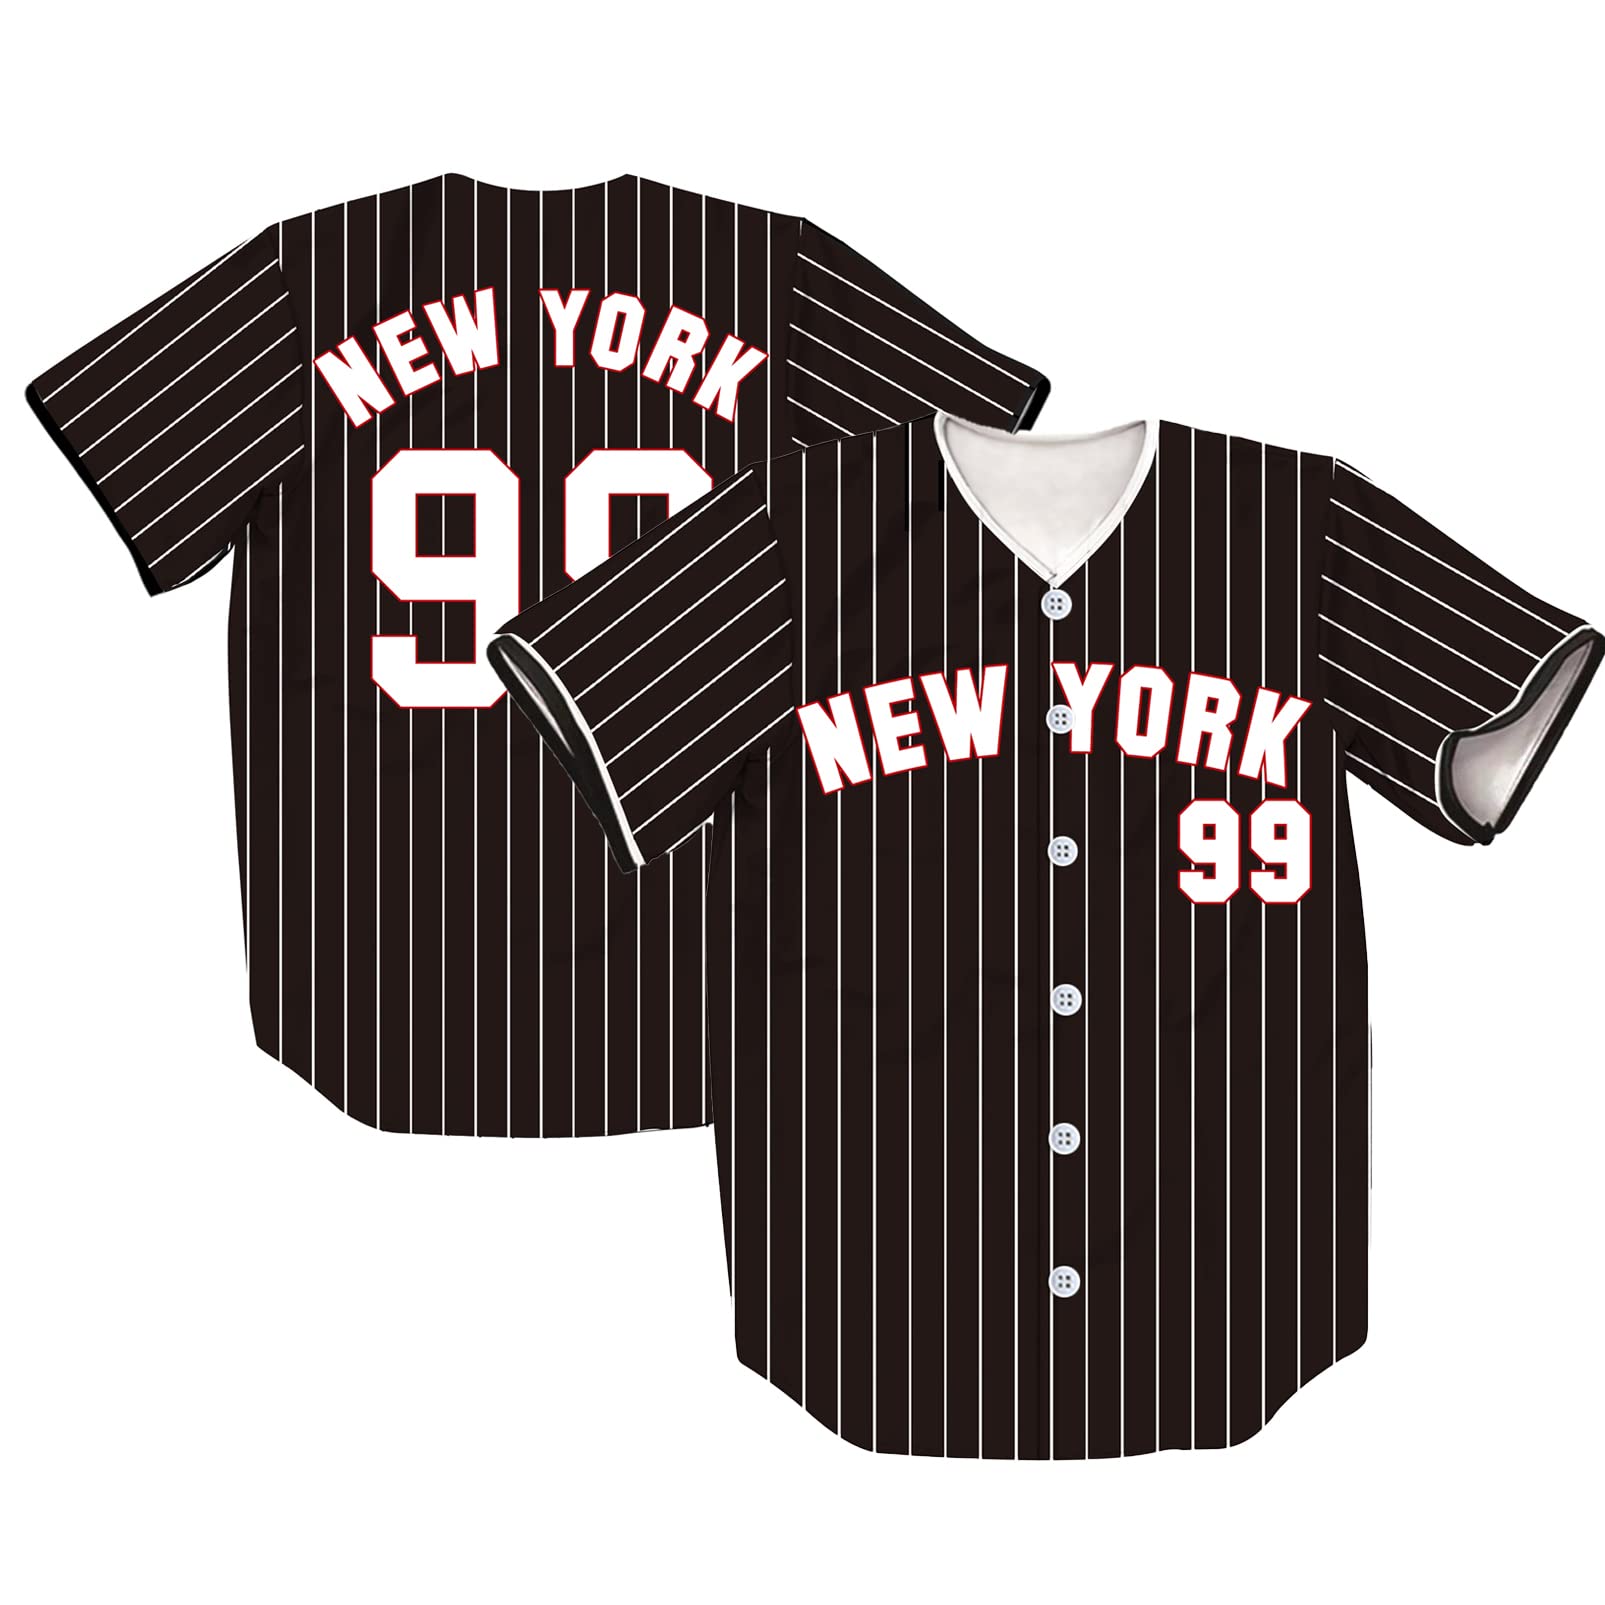 TIFIYA New York 99 Stripes Printed Baseball Jersey NY Baseball Team Shirts for Men/Women/Young